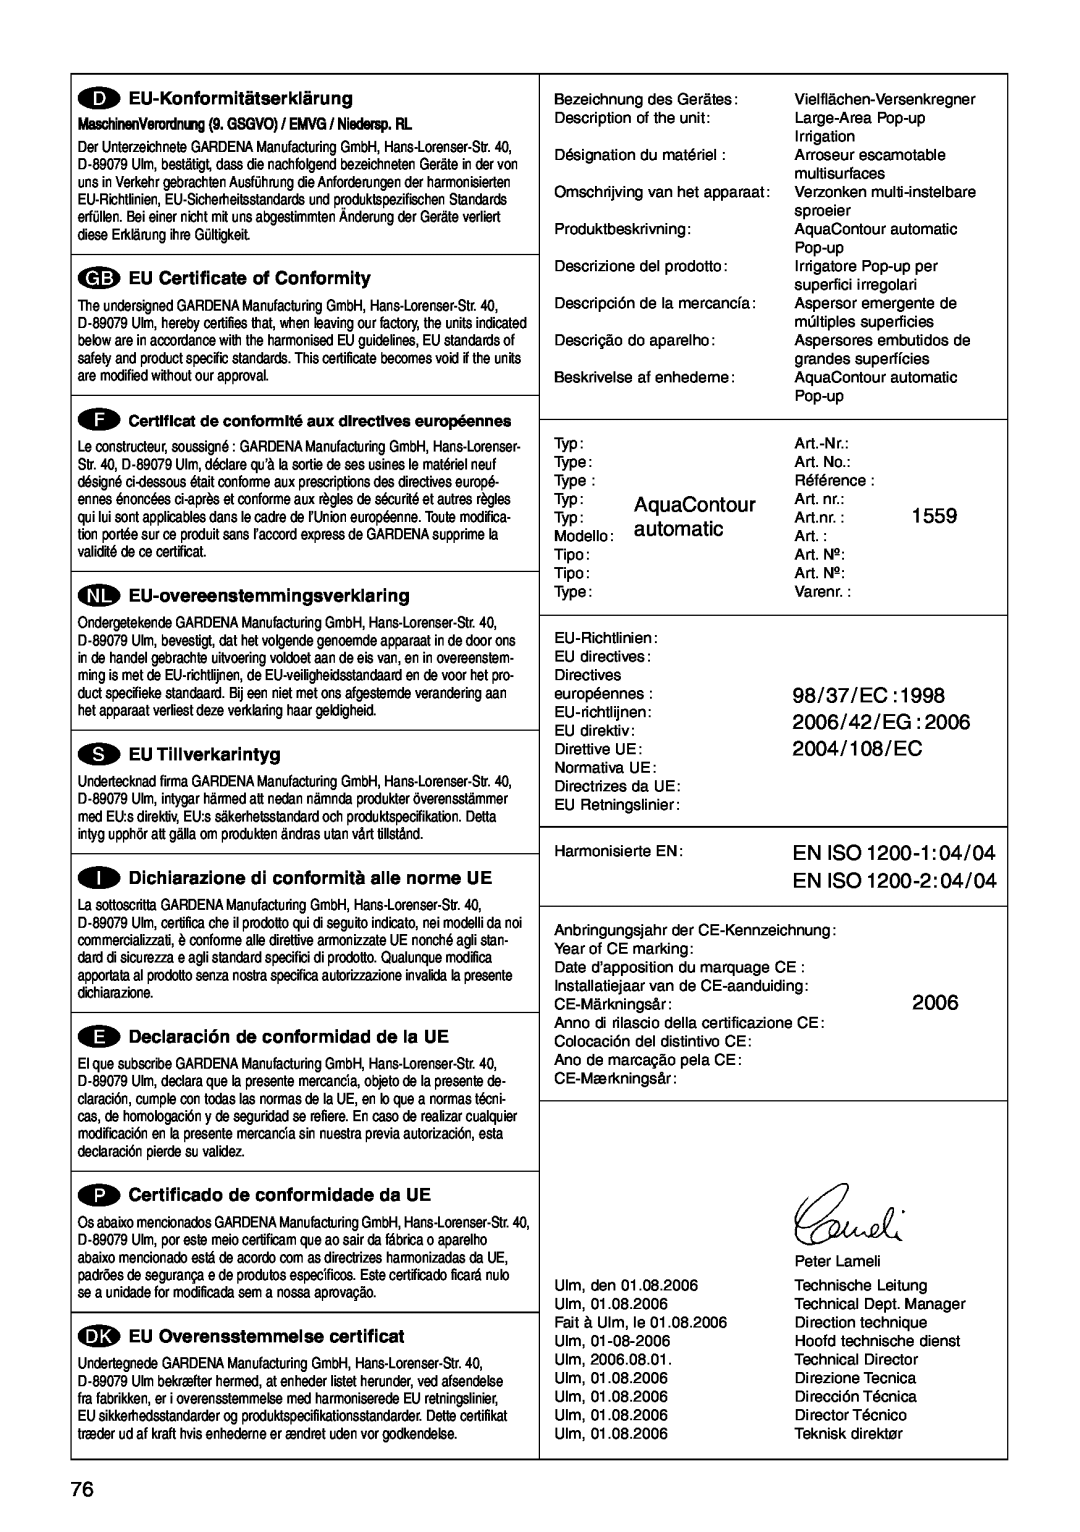 Gardena 1559 manual EU-Konformitätserklärung, G EU Certificate of Conformity, N EU-overeenstemmingsverklaring 